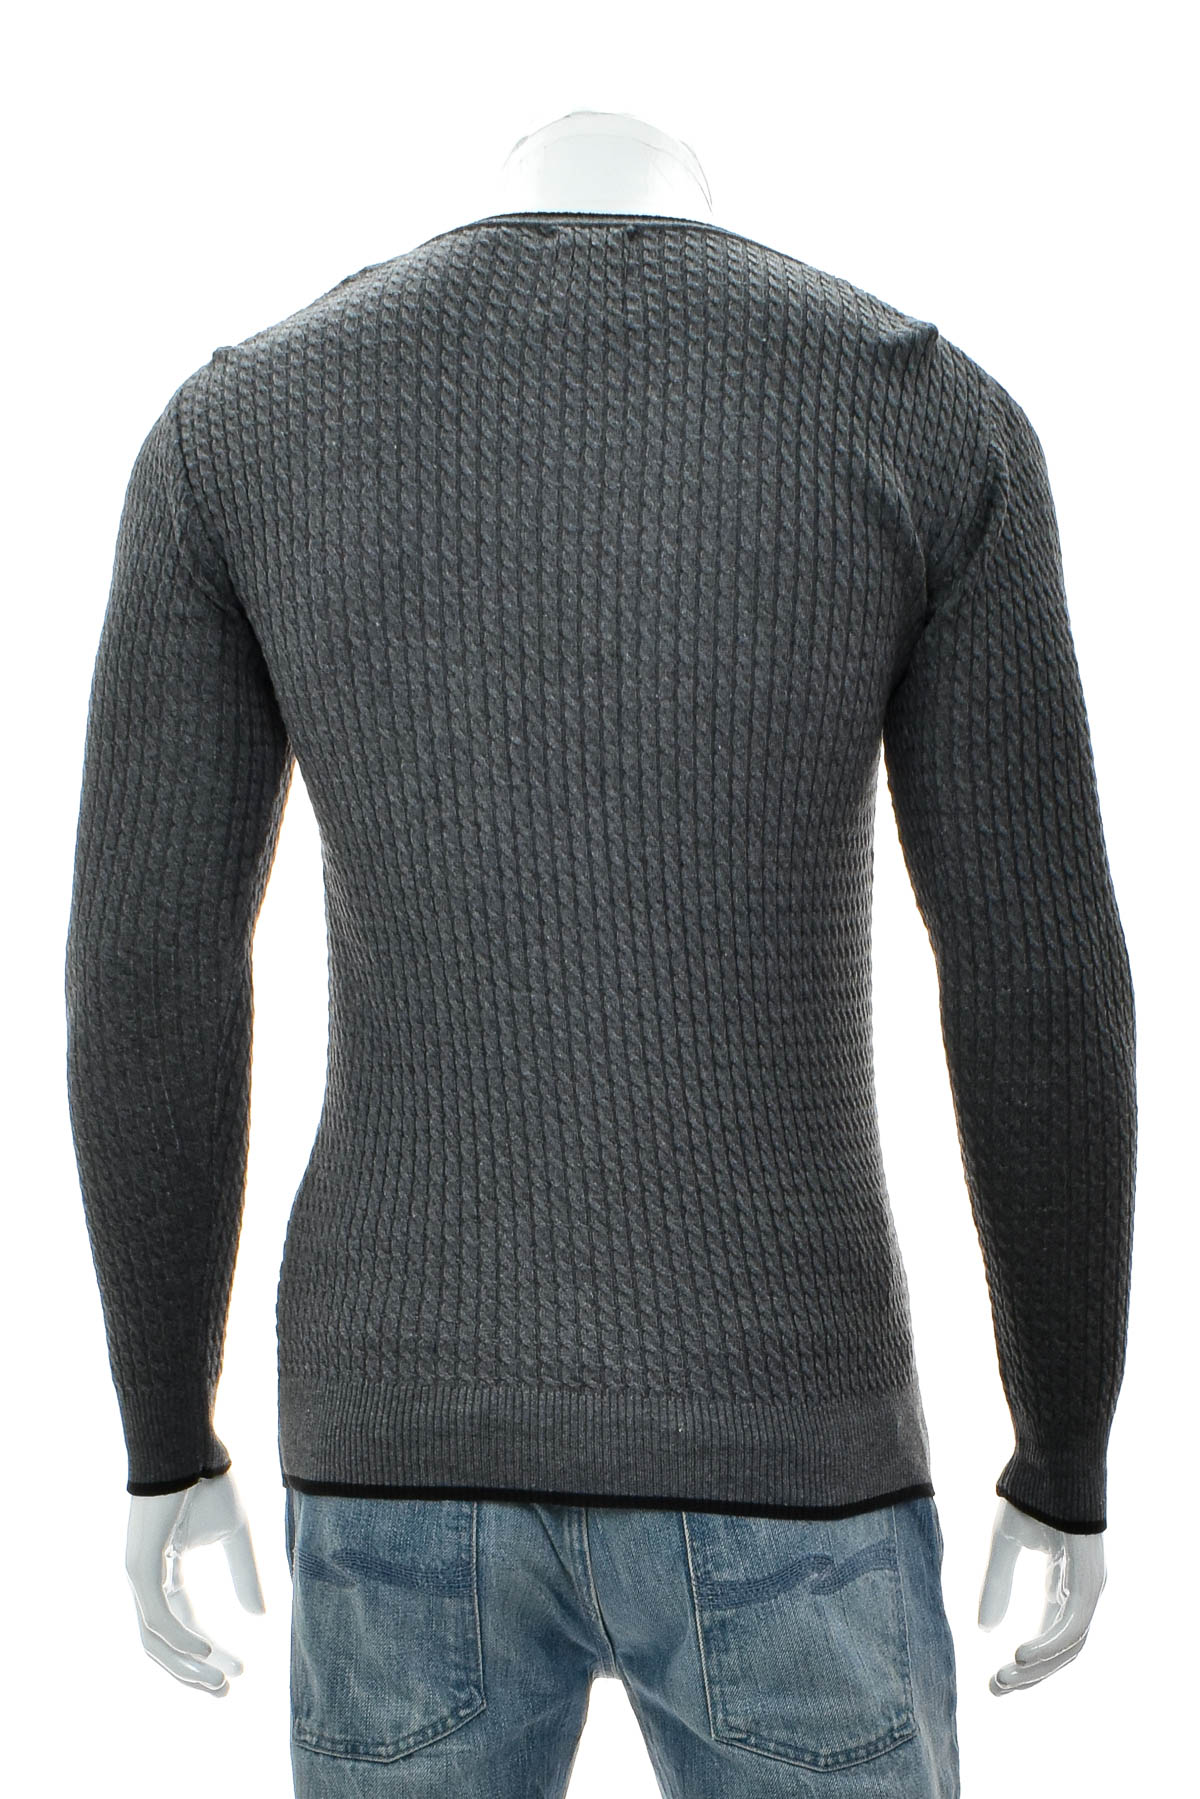 Men's sweater - Ce & Ce - 1